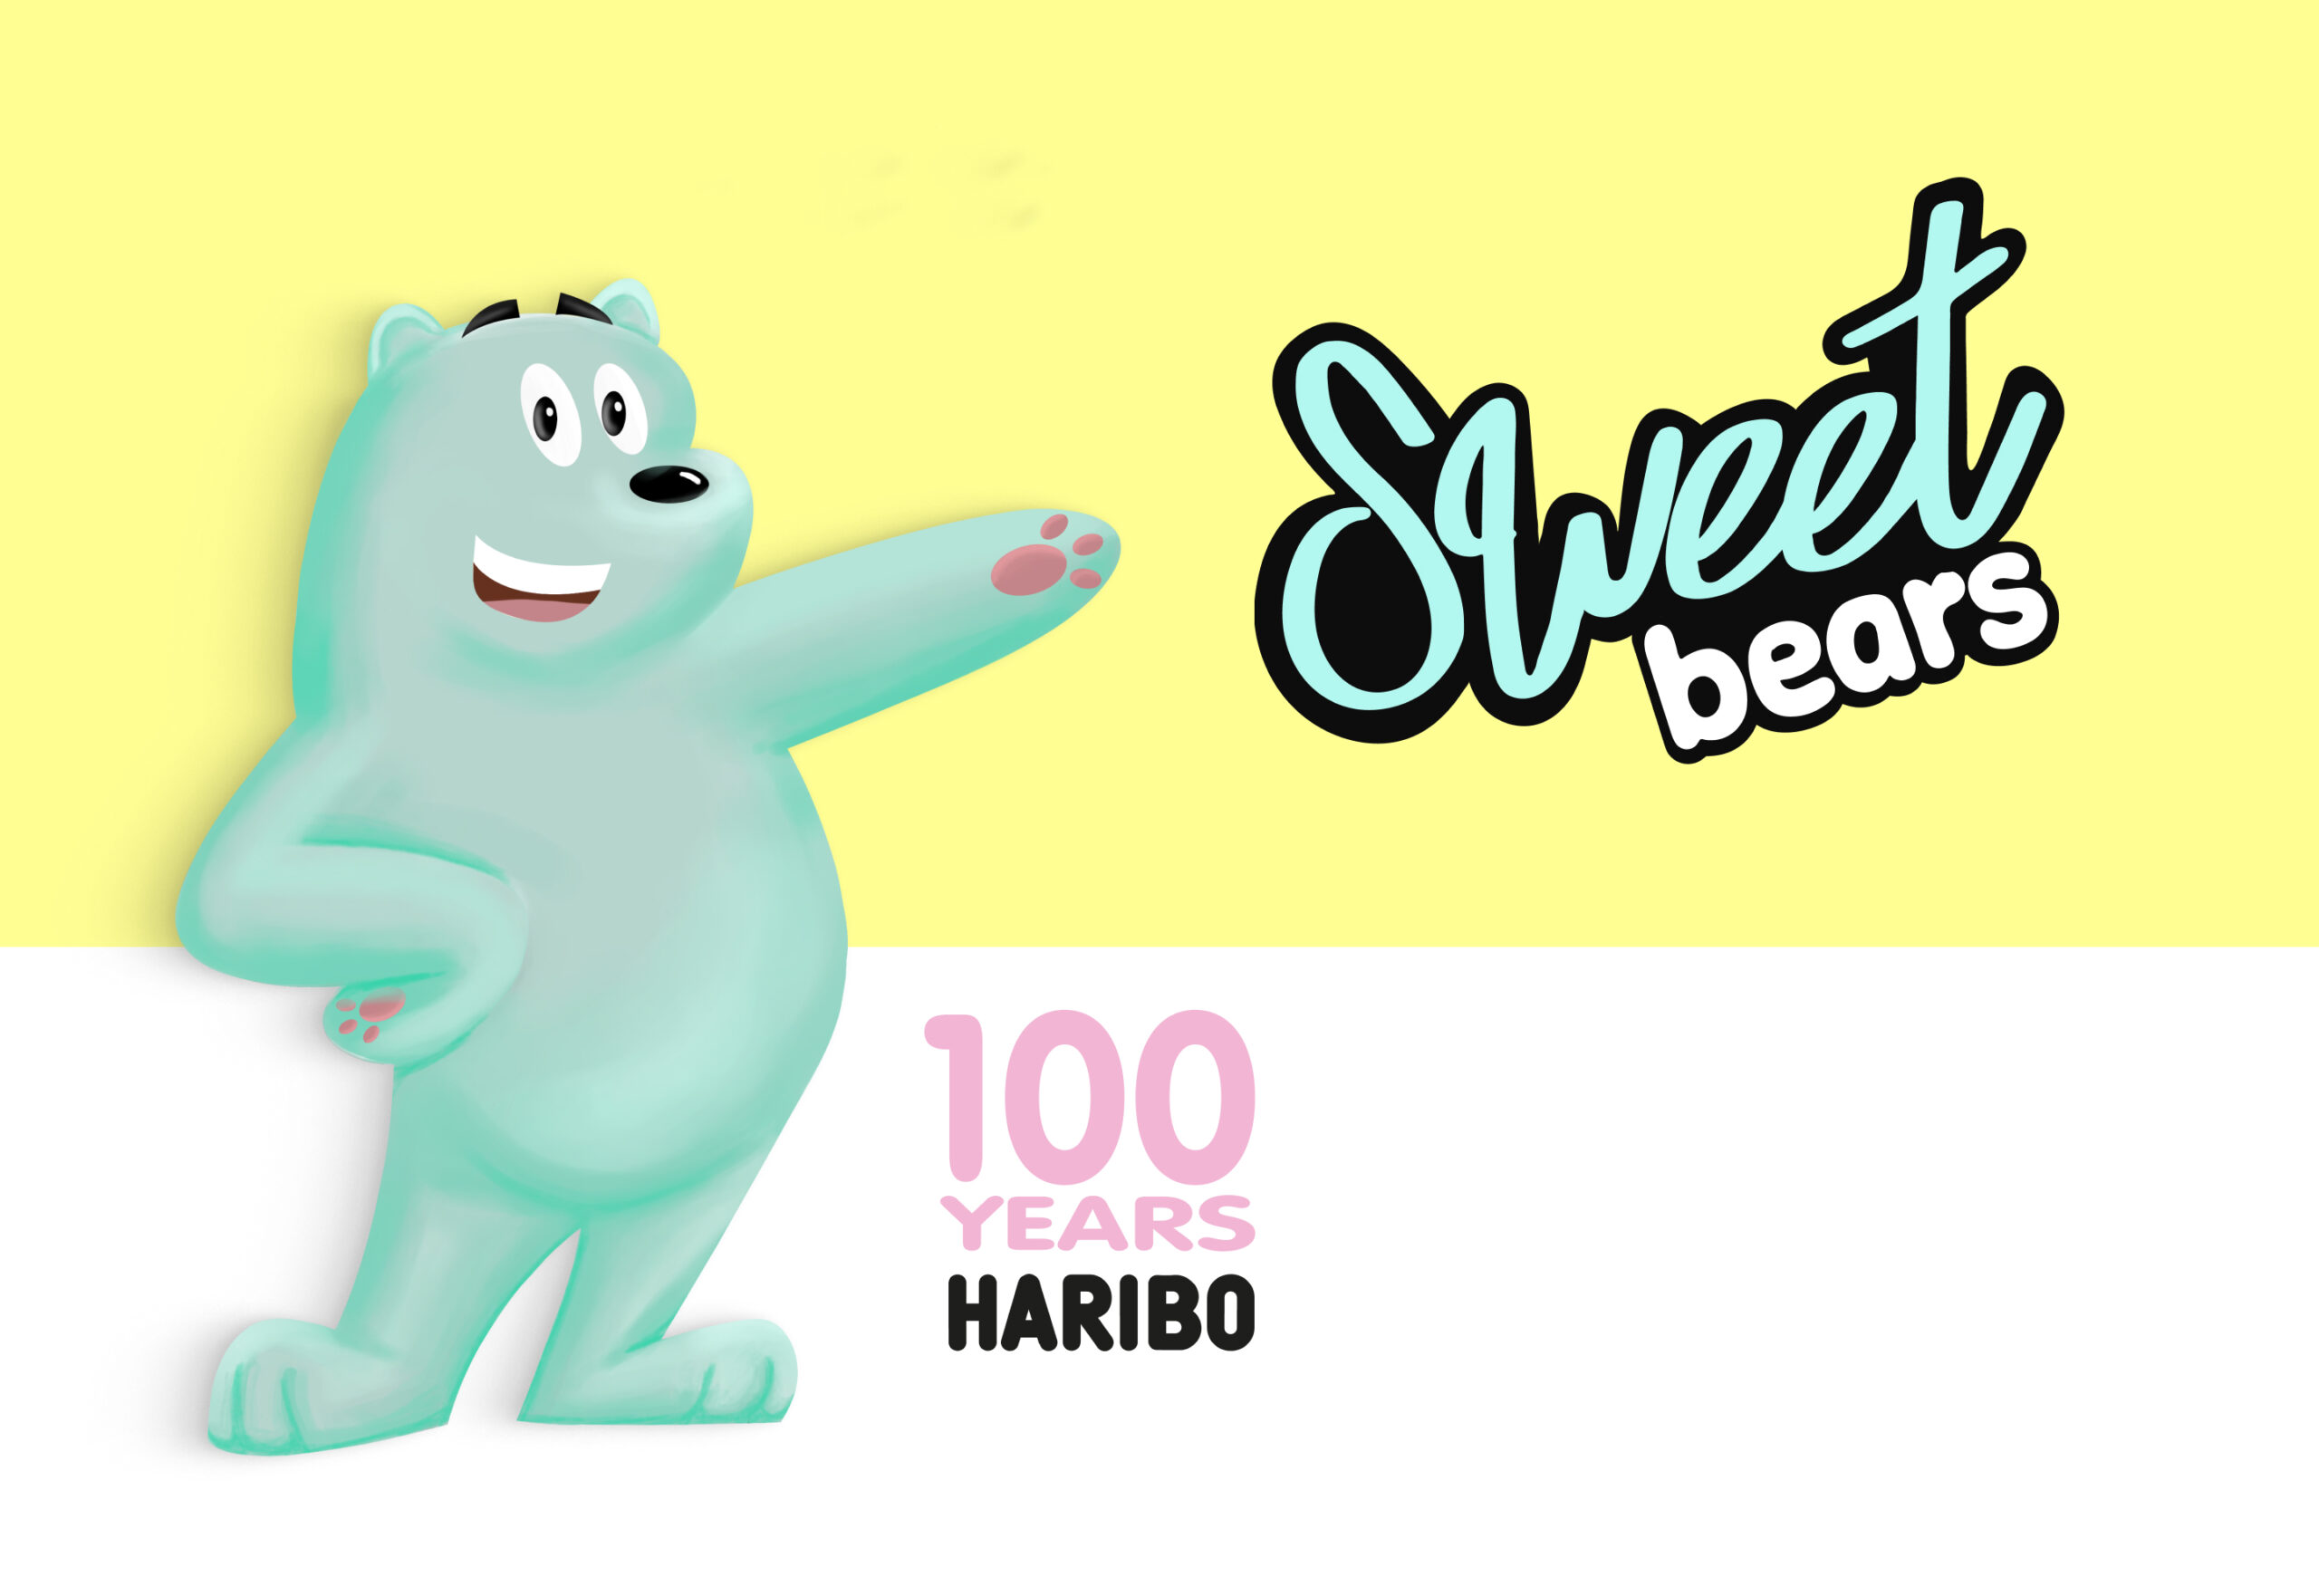 Mascott Haribo sweetbears 100 ans